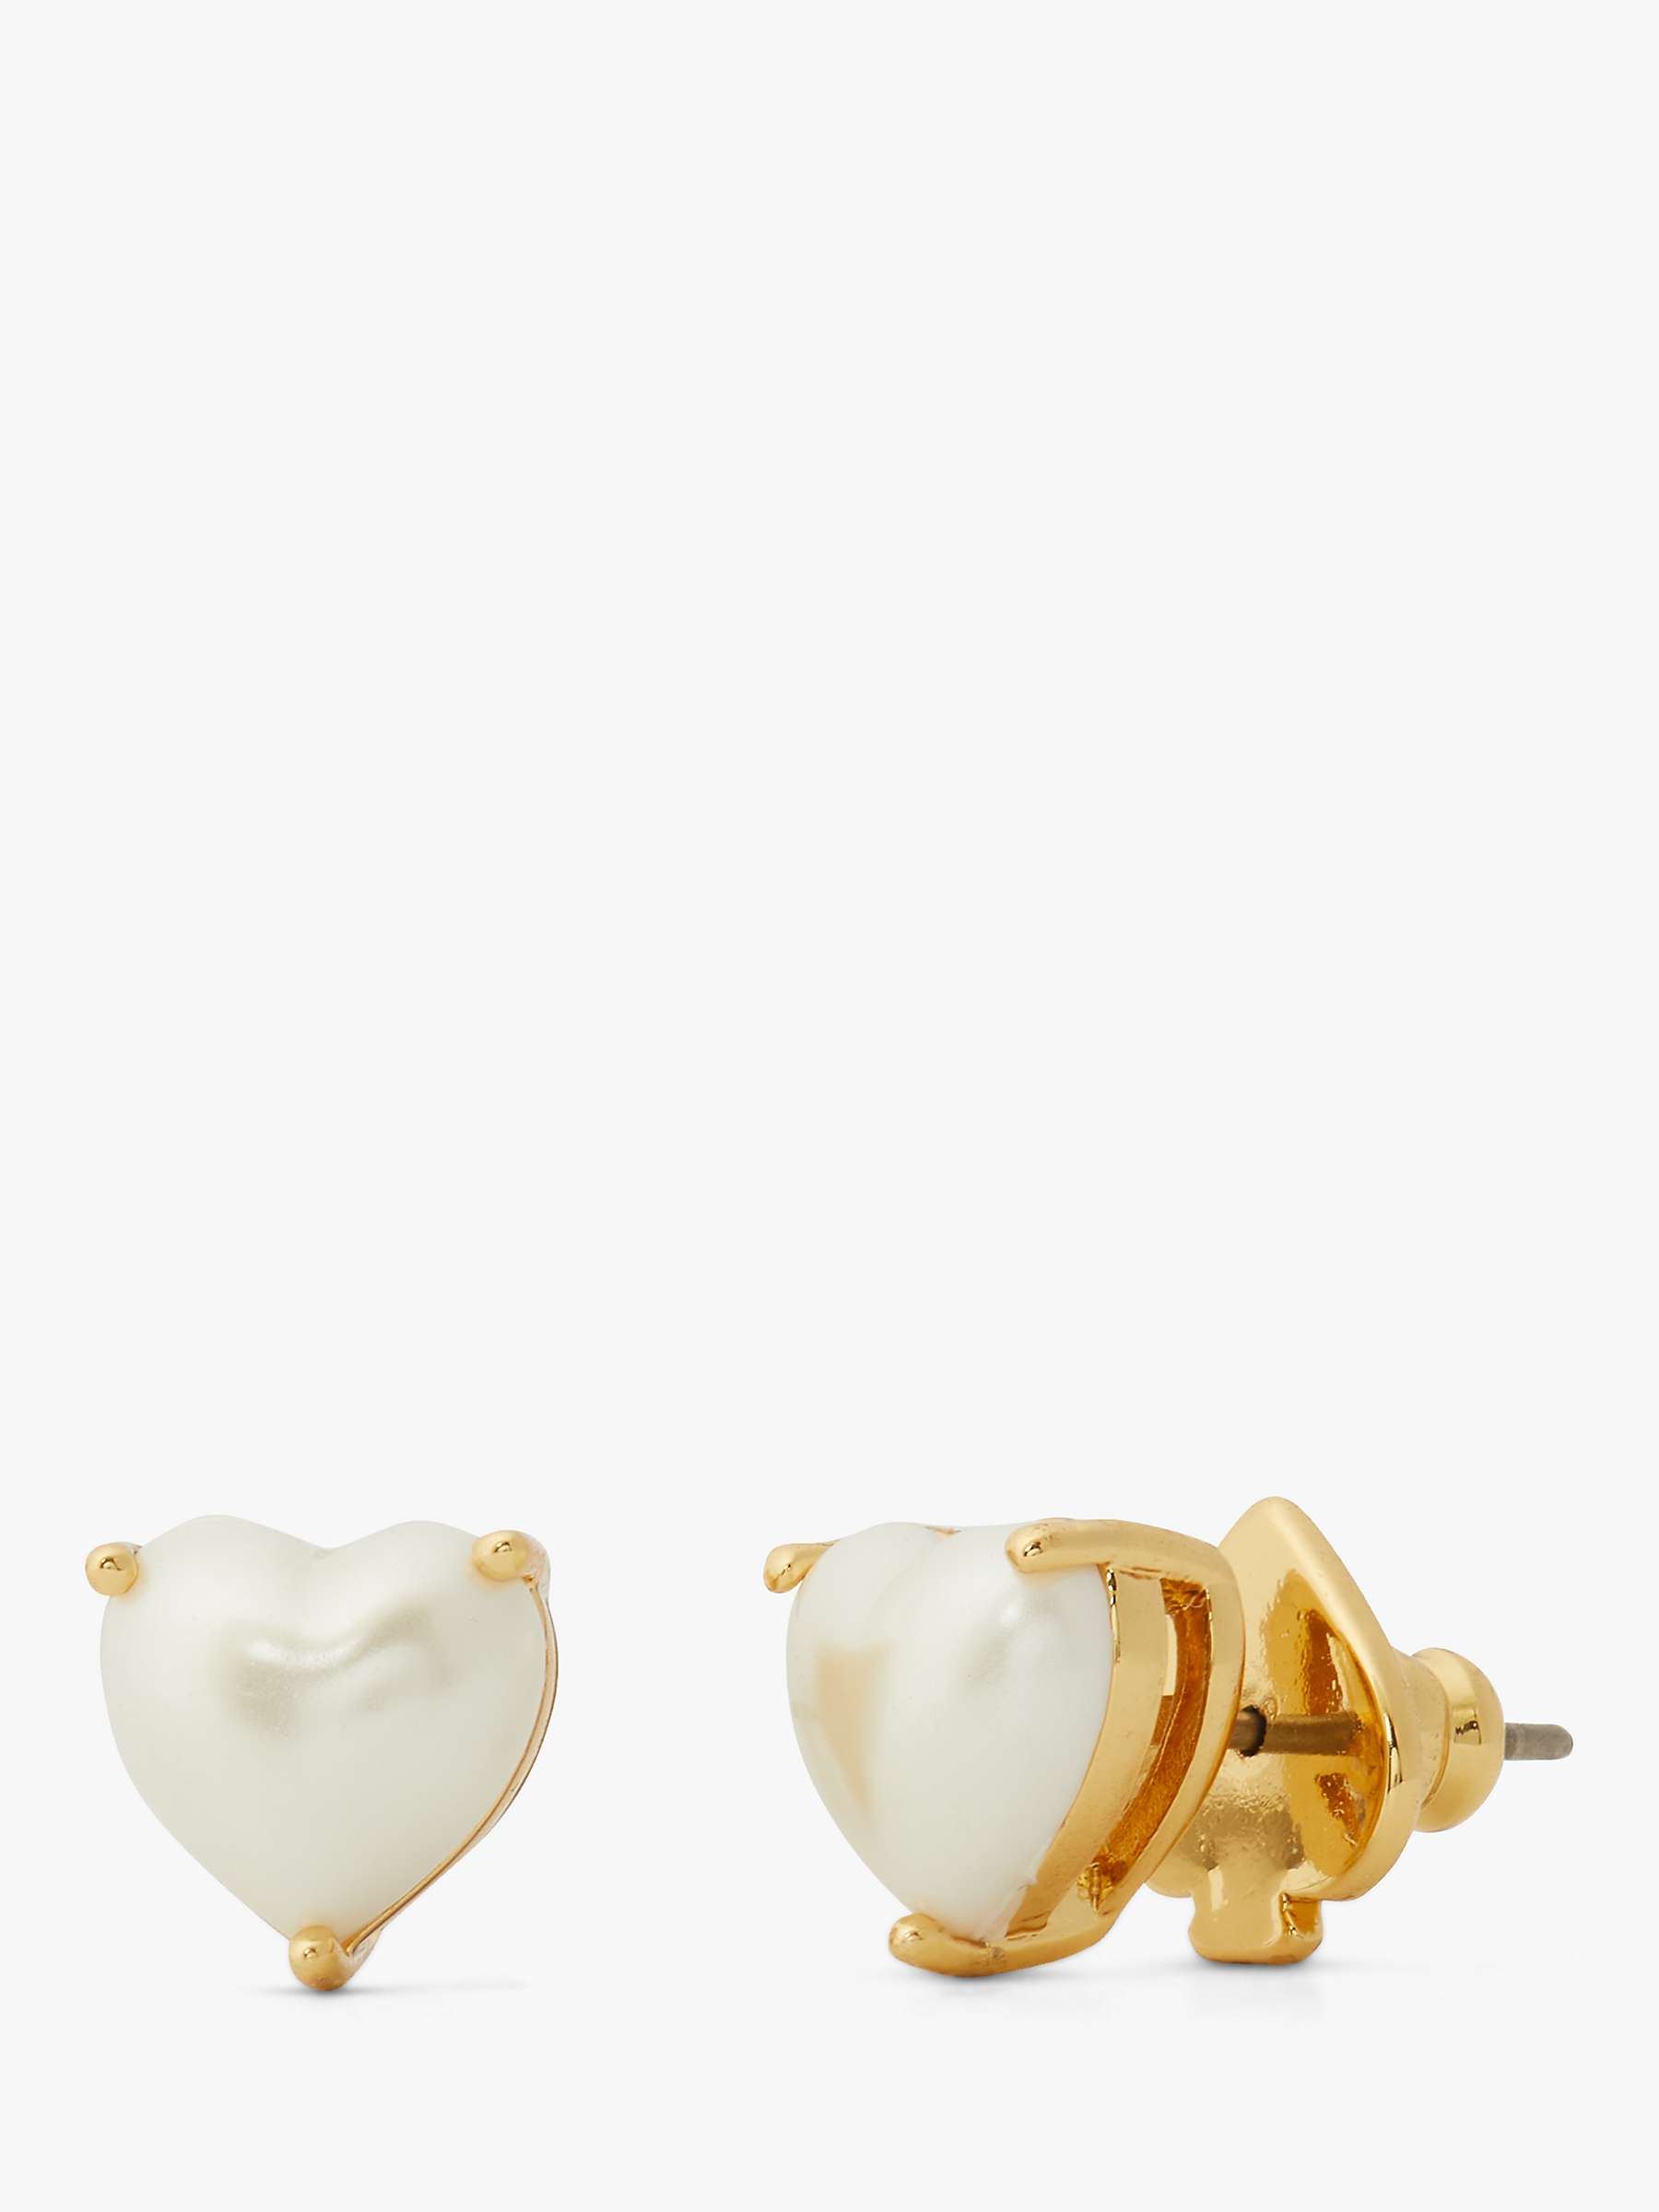 Buy kate spade new york Heart Stud Earrings, Gold/White Online at johnlewis.com